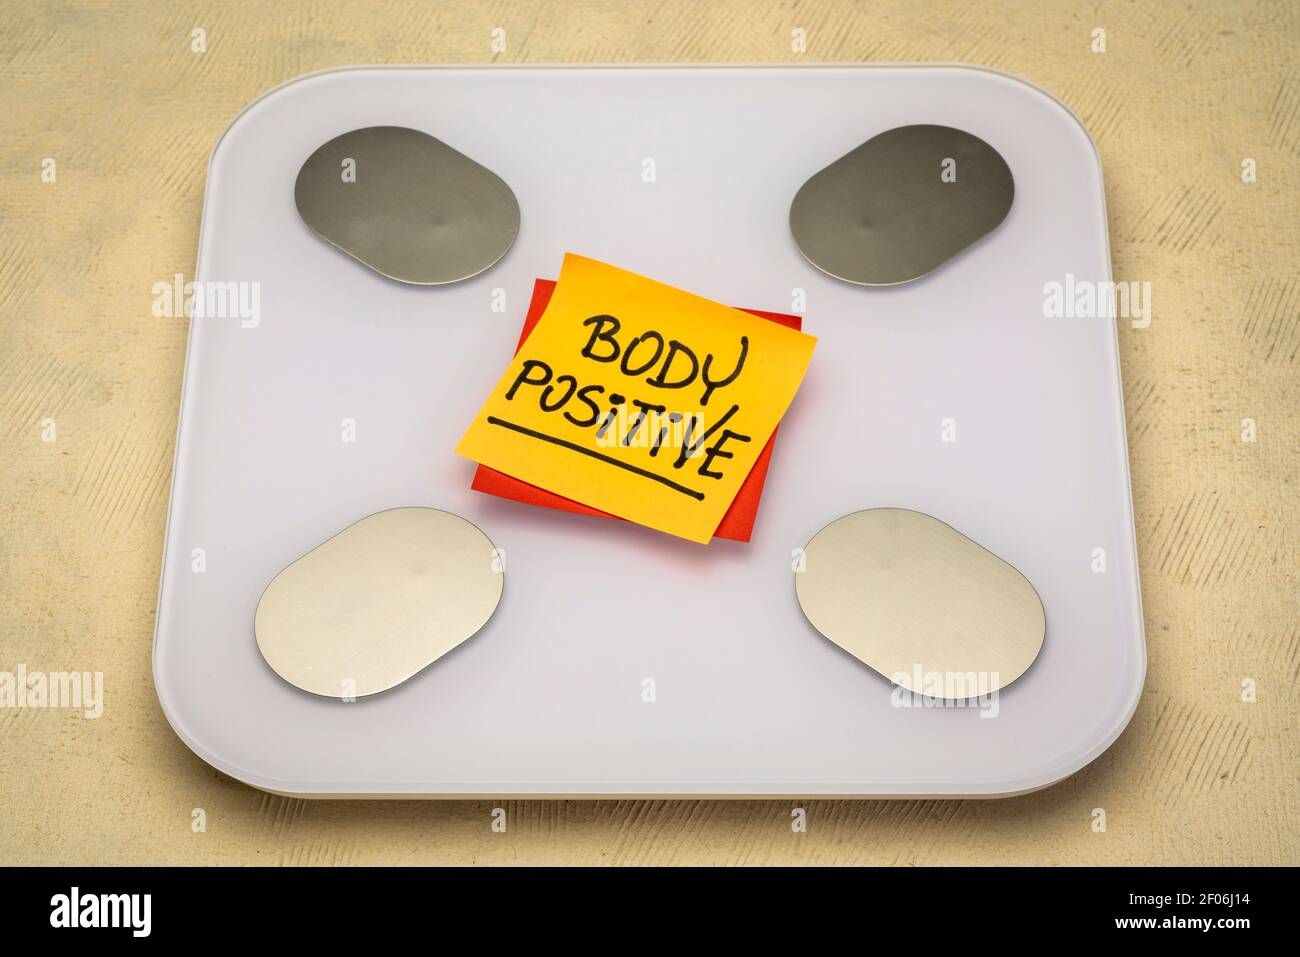 Body positive - Erinnerungsnotiz auf einer Badezimmerwaage, Selbstakzeptanz und positive Denkweise Konzept Stockfoto